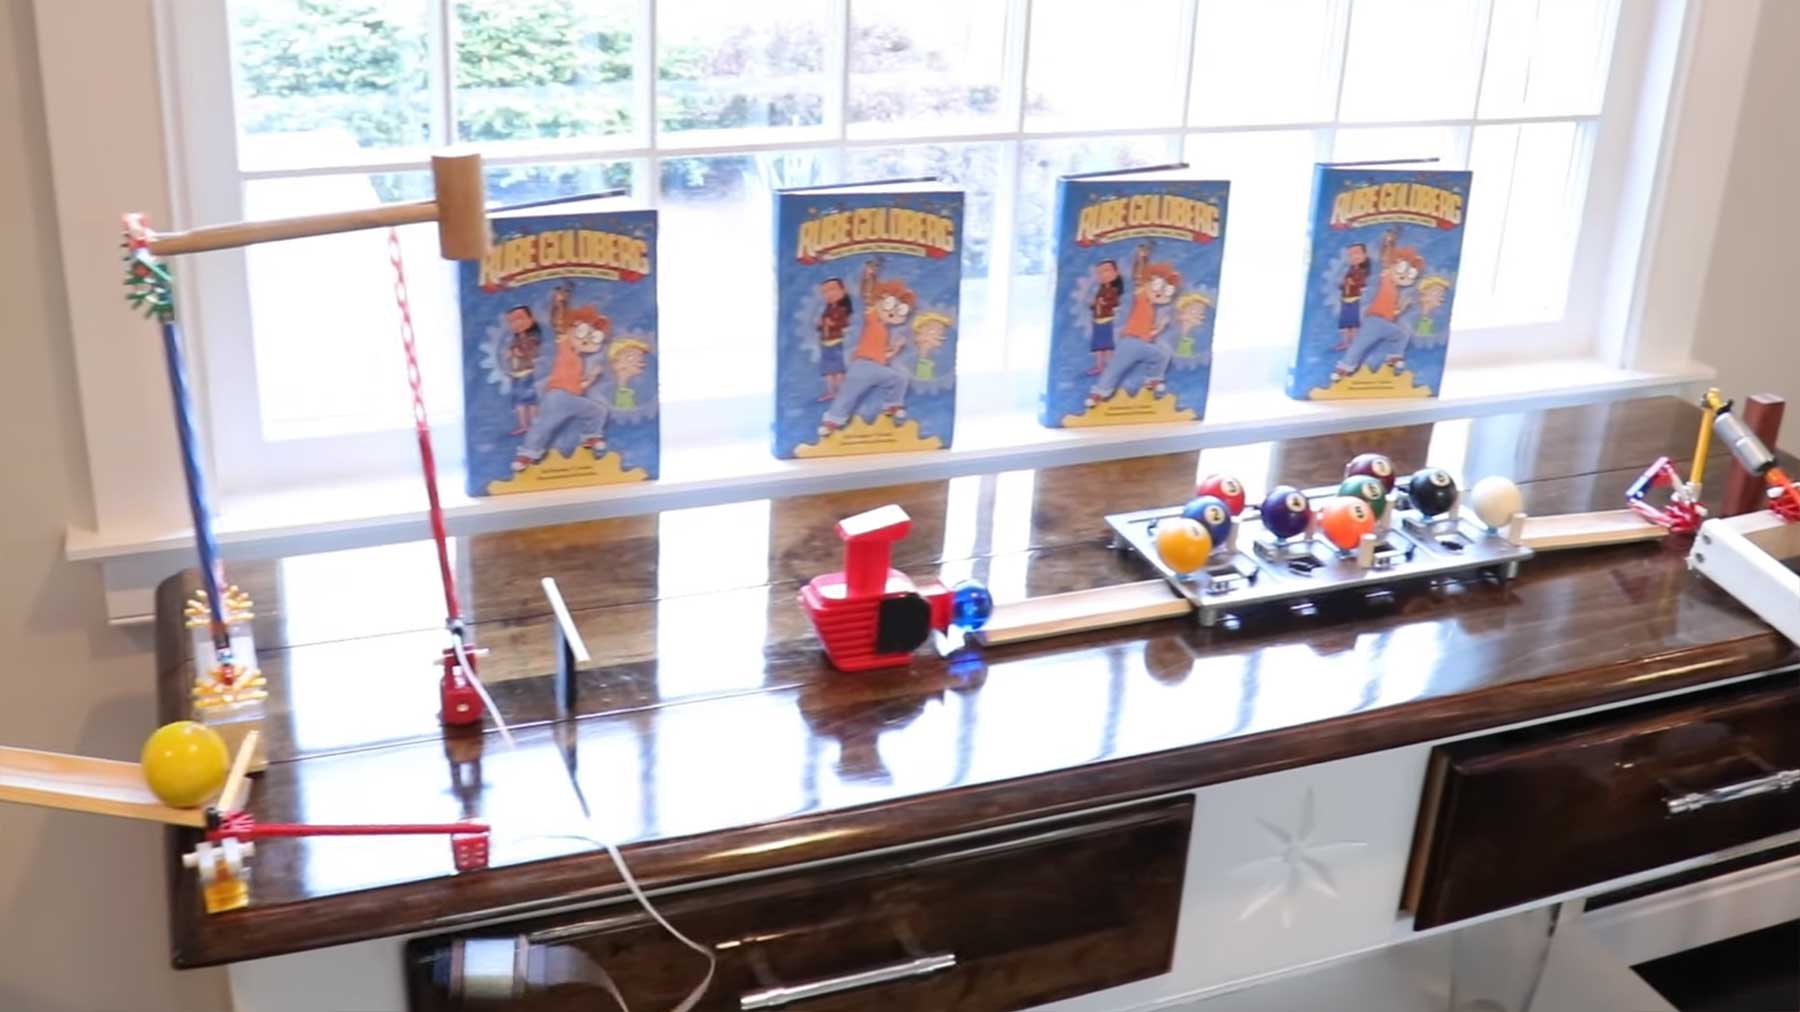 Rube Goldberg Machine, um ein Buch zu öffnen rube-goldberg-machine-buch-aufmachen 